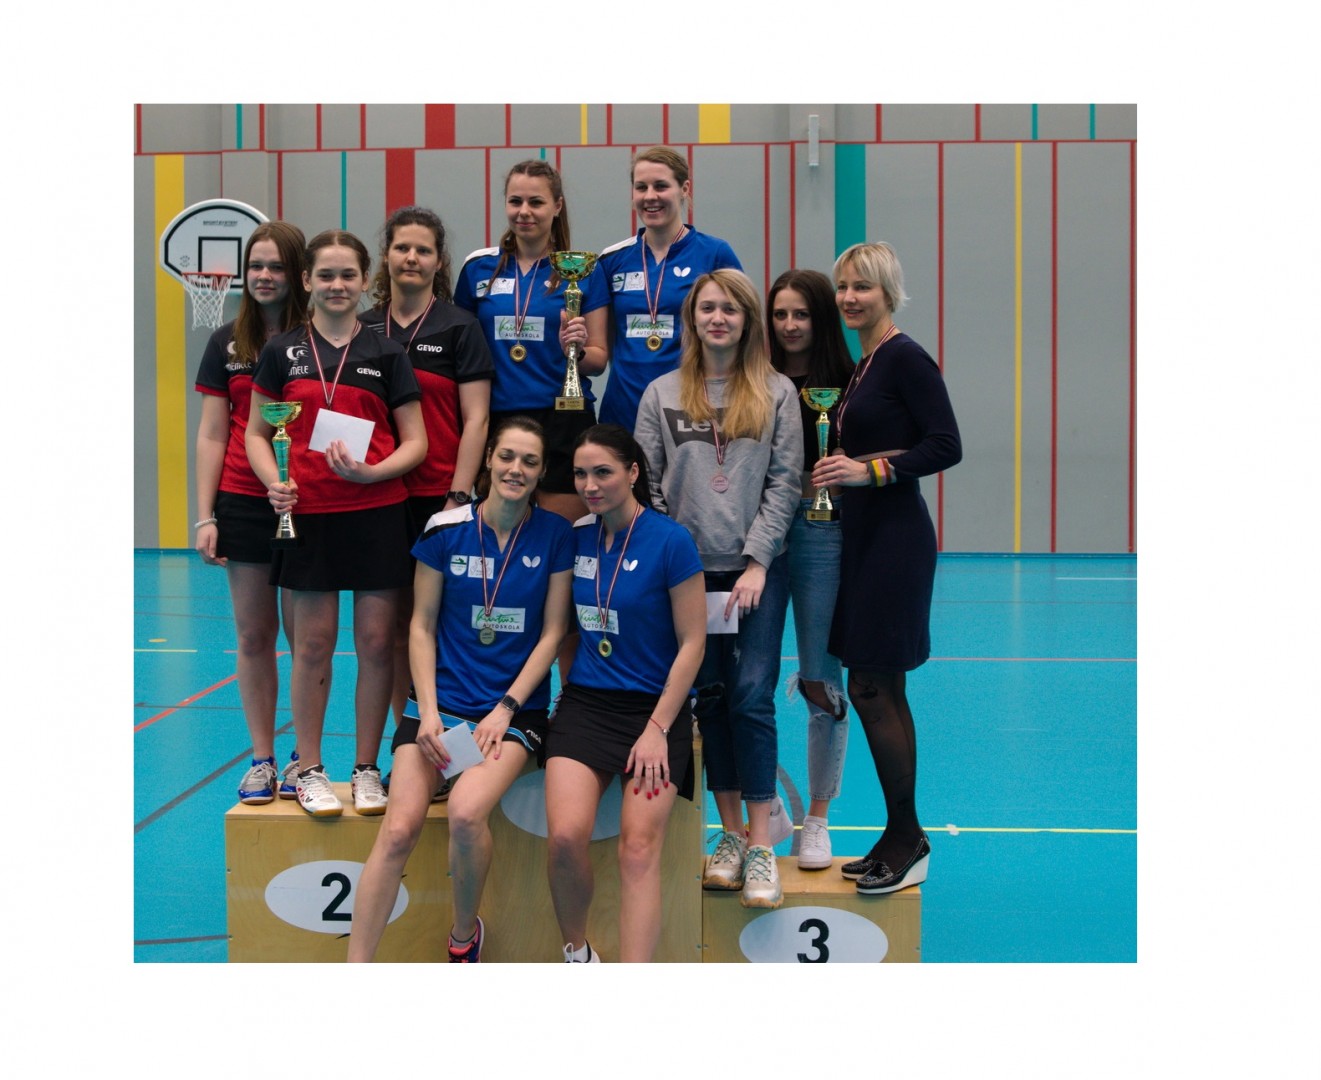 RTU sieviešu komanda izcīna bronzu Latvijas komandu čempionātā galda tenisā augstākajā līgā